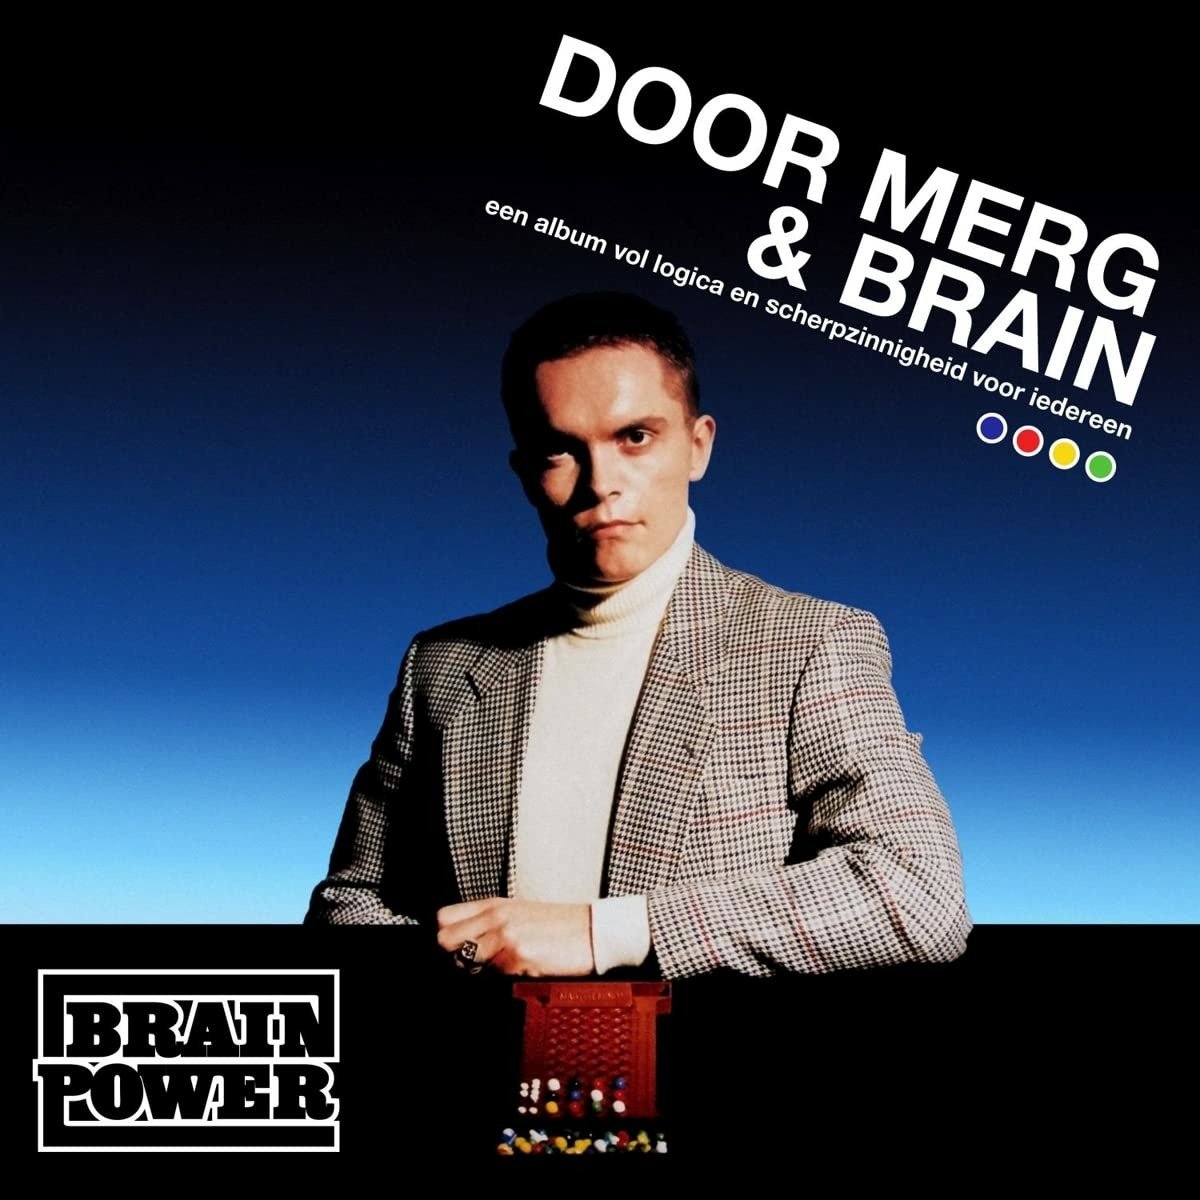 CD Shop - BRAINPOWER DOOR MERG & BRAIN